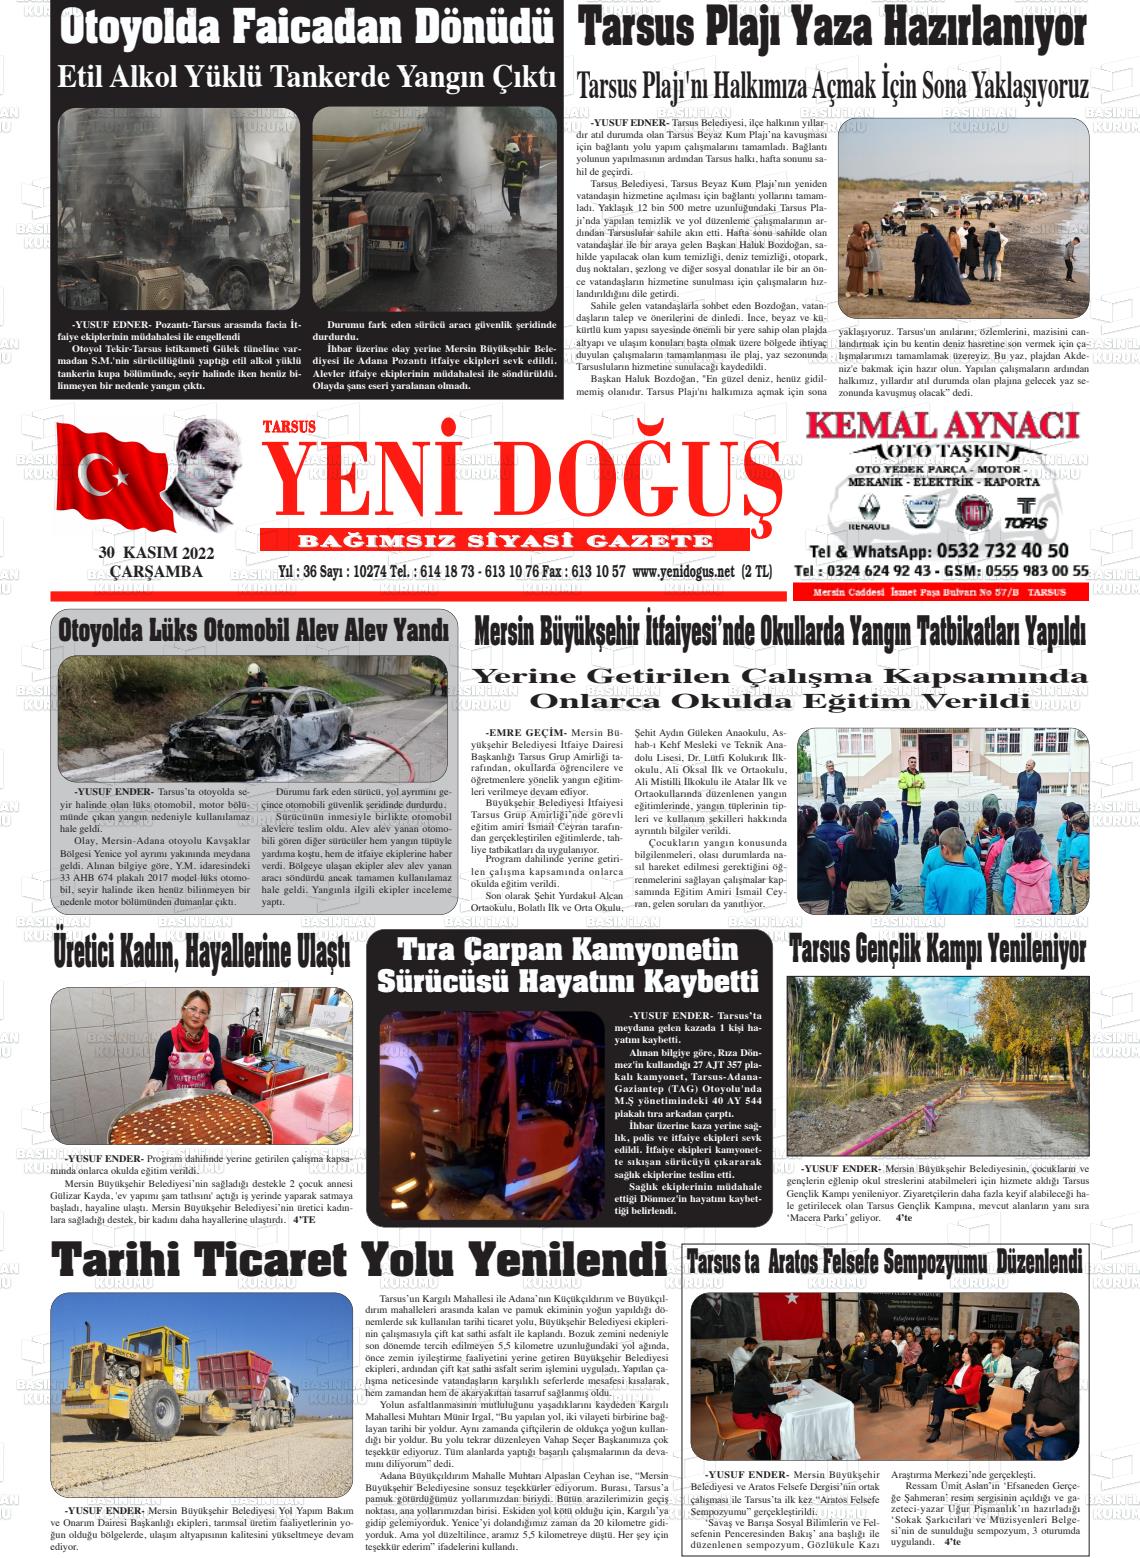 30 Kasım 2022 Tarsus Yeni Doğuş Gazete Manşeti